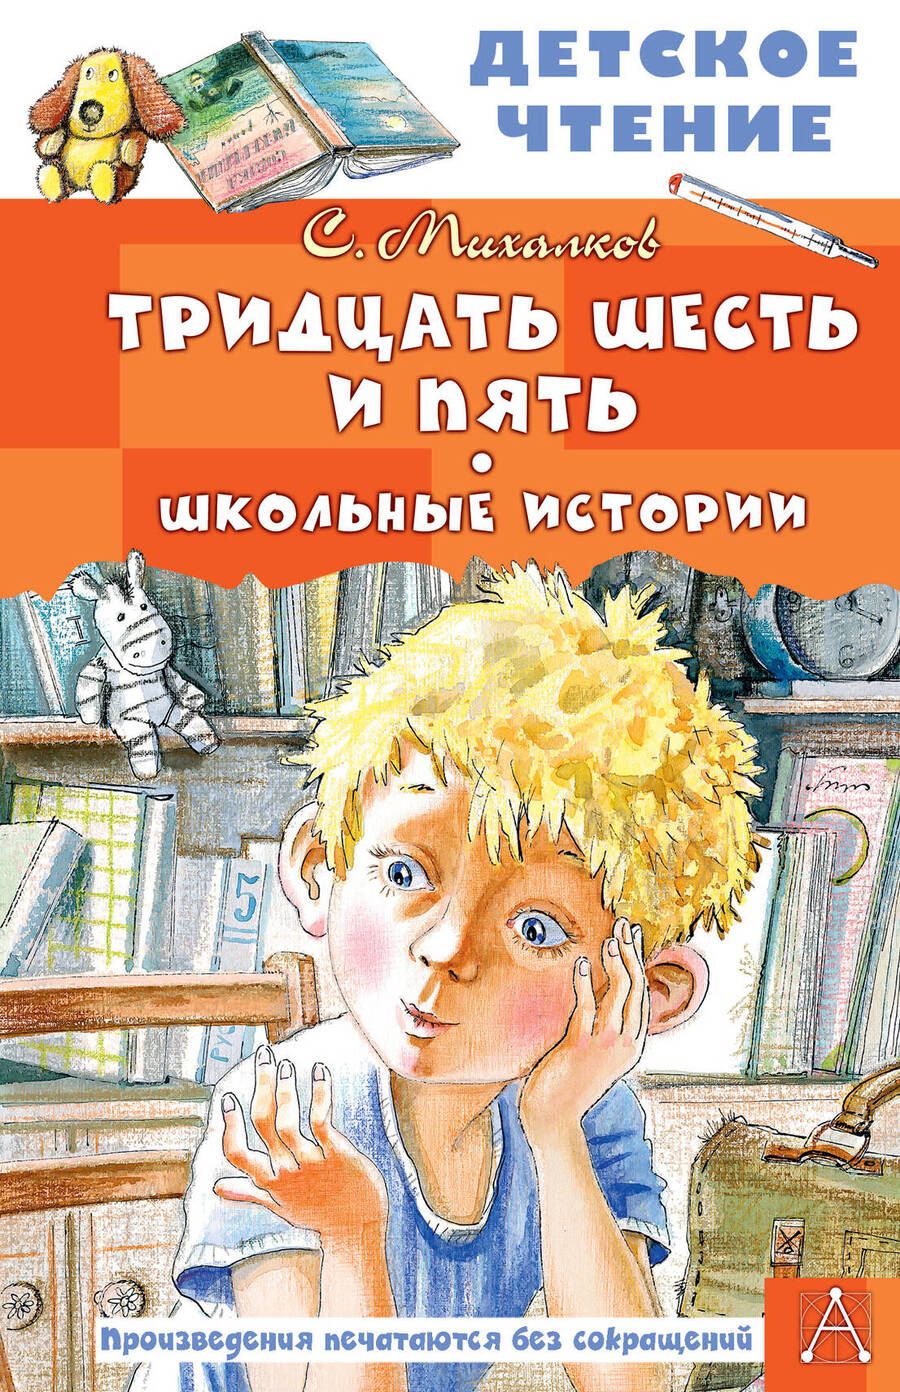 Обложка книги "Михалков: Тридцать шесть и пять. Школьные истории"